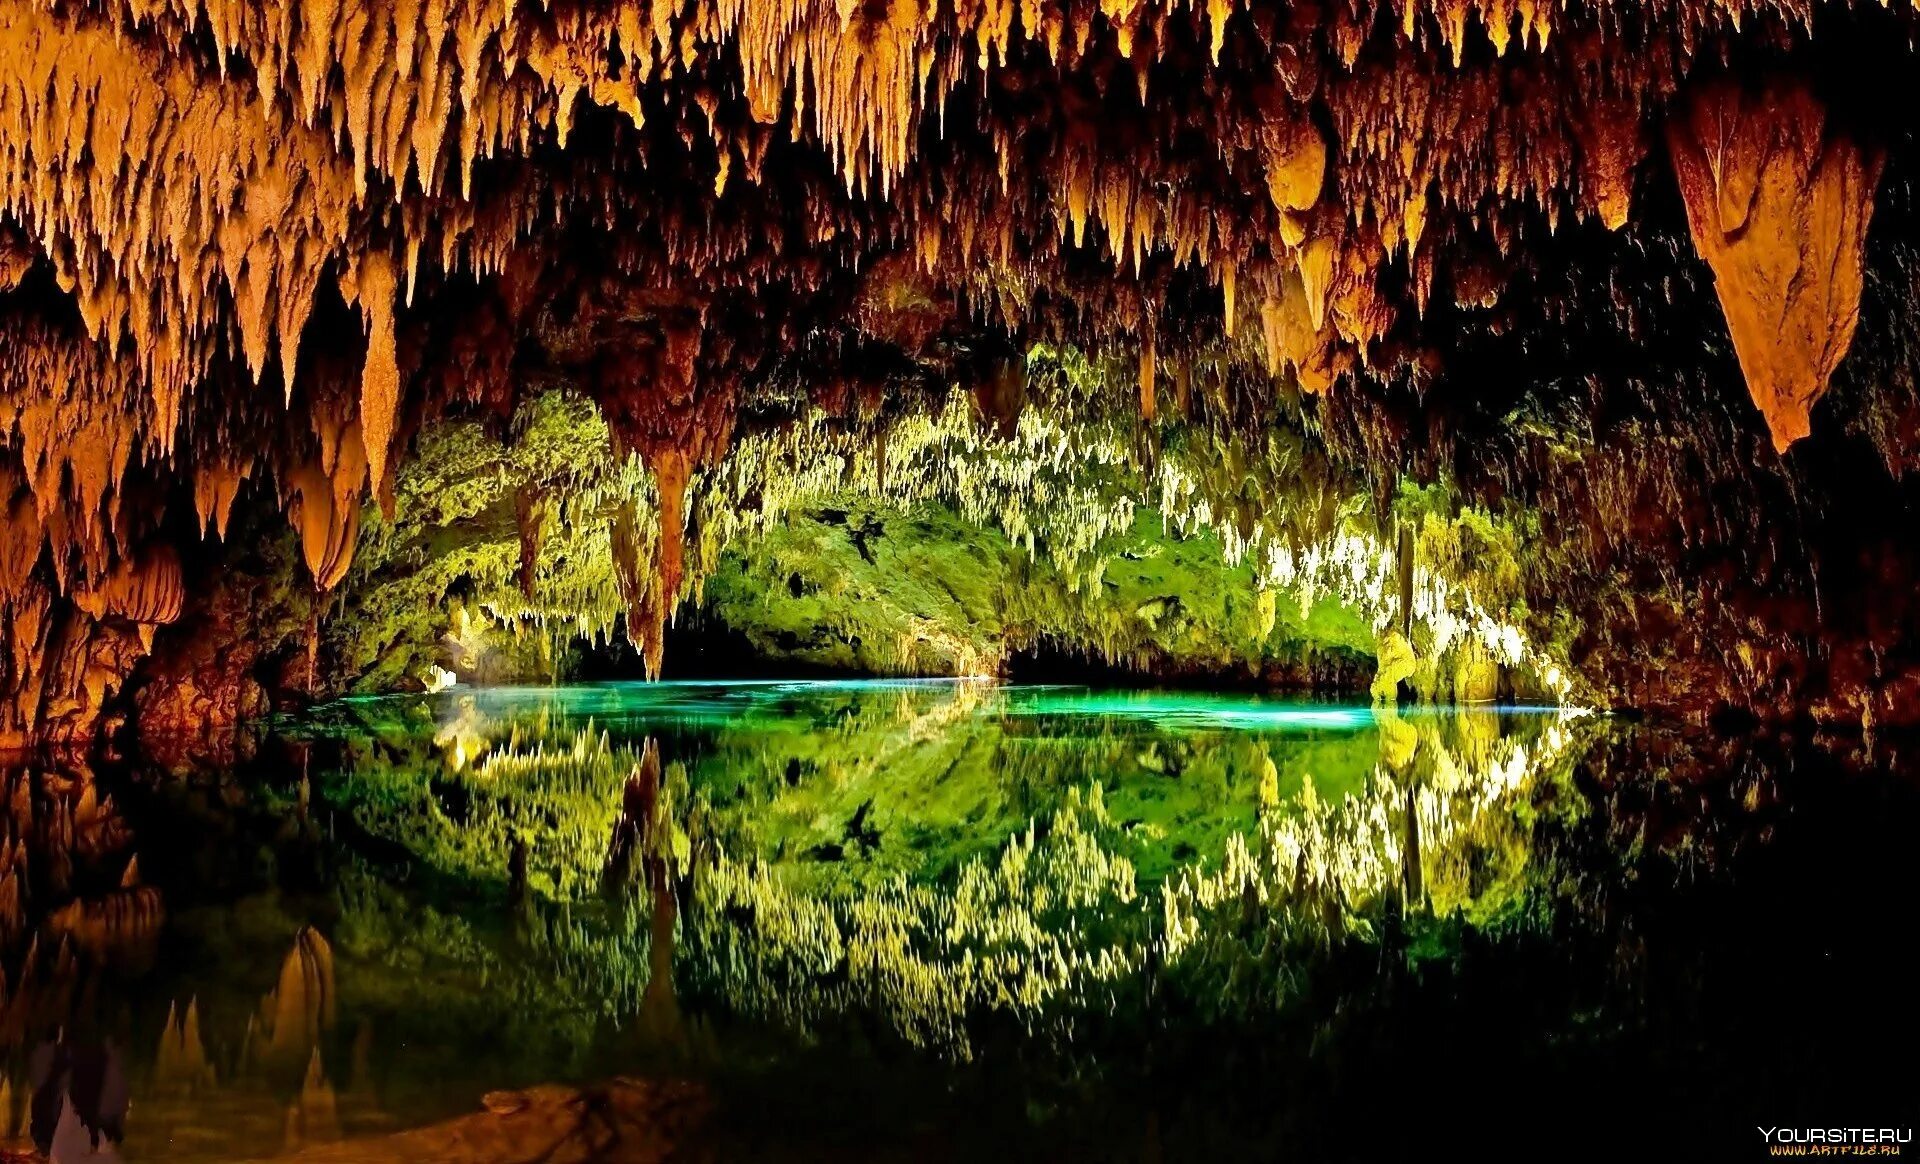 Big mother nature cave. Национальный парк Фонгня-Кебанг. Пещера Шондонг. Пещера Шондонг (национальный парк Фонгня-Кебанг). Подземные озера в Мексике.